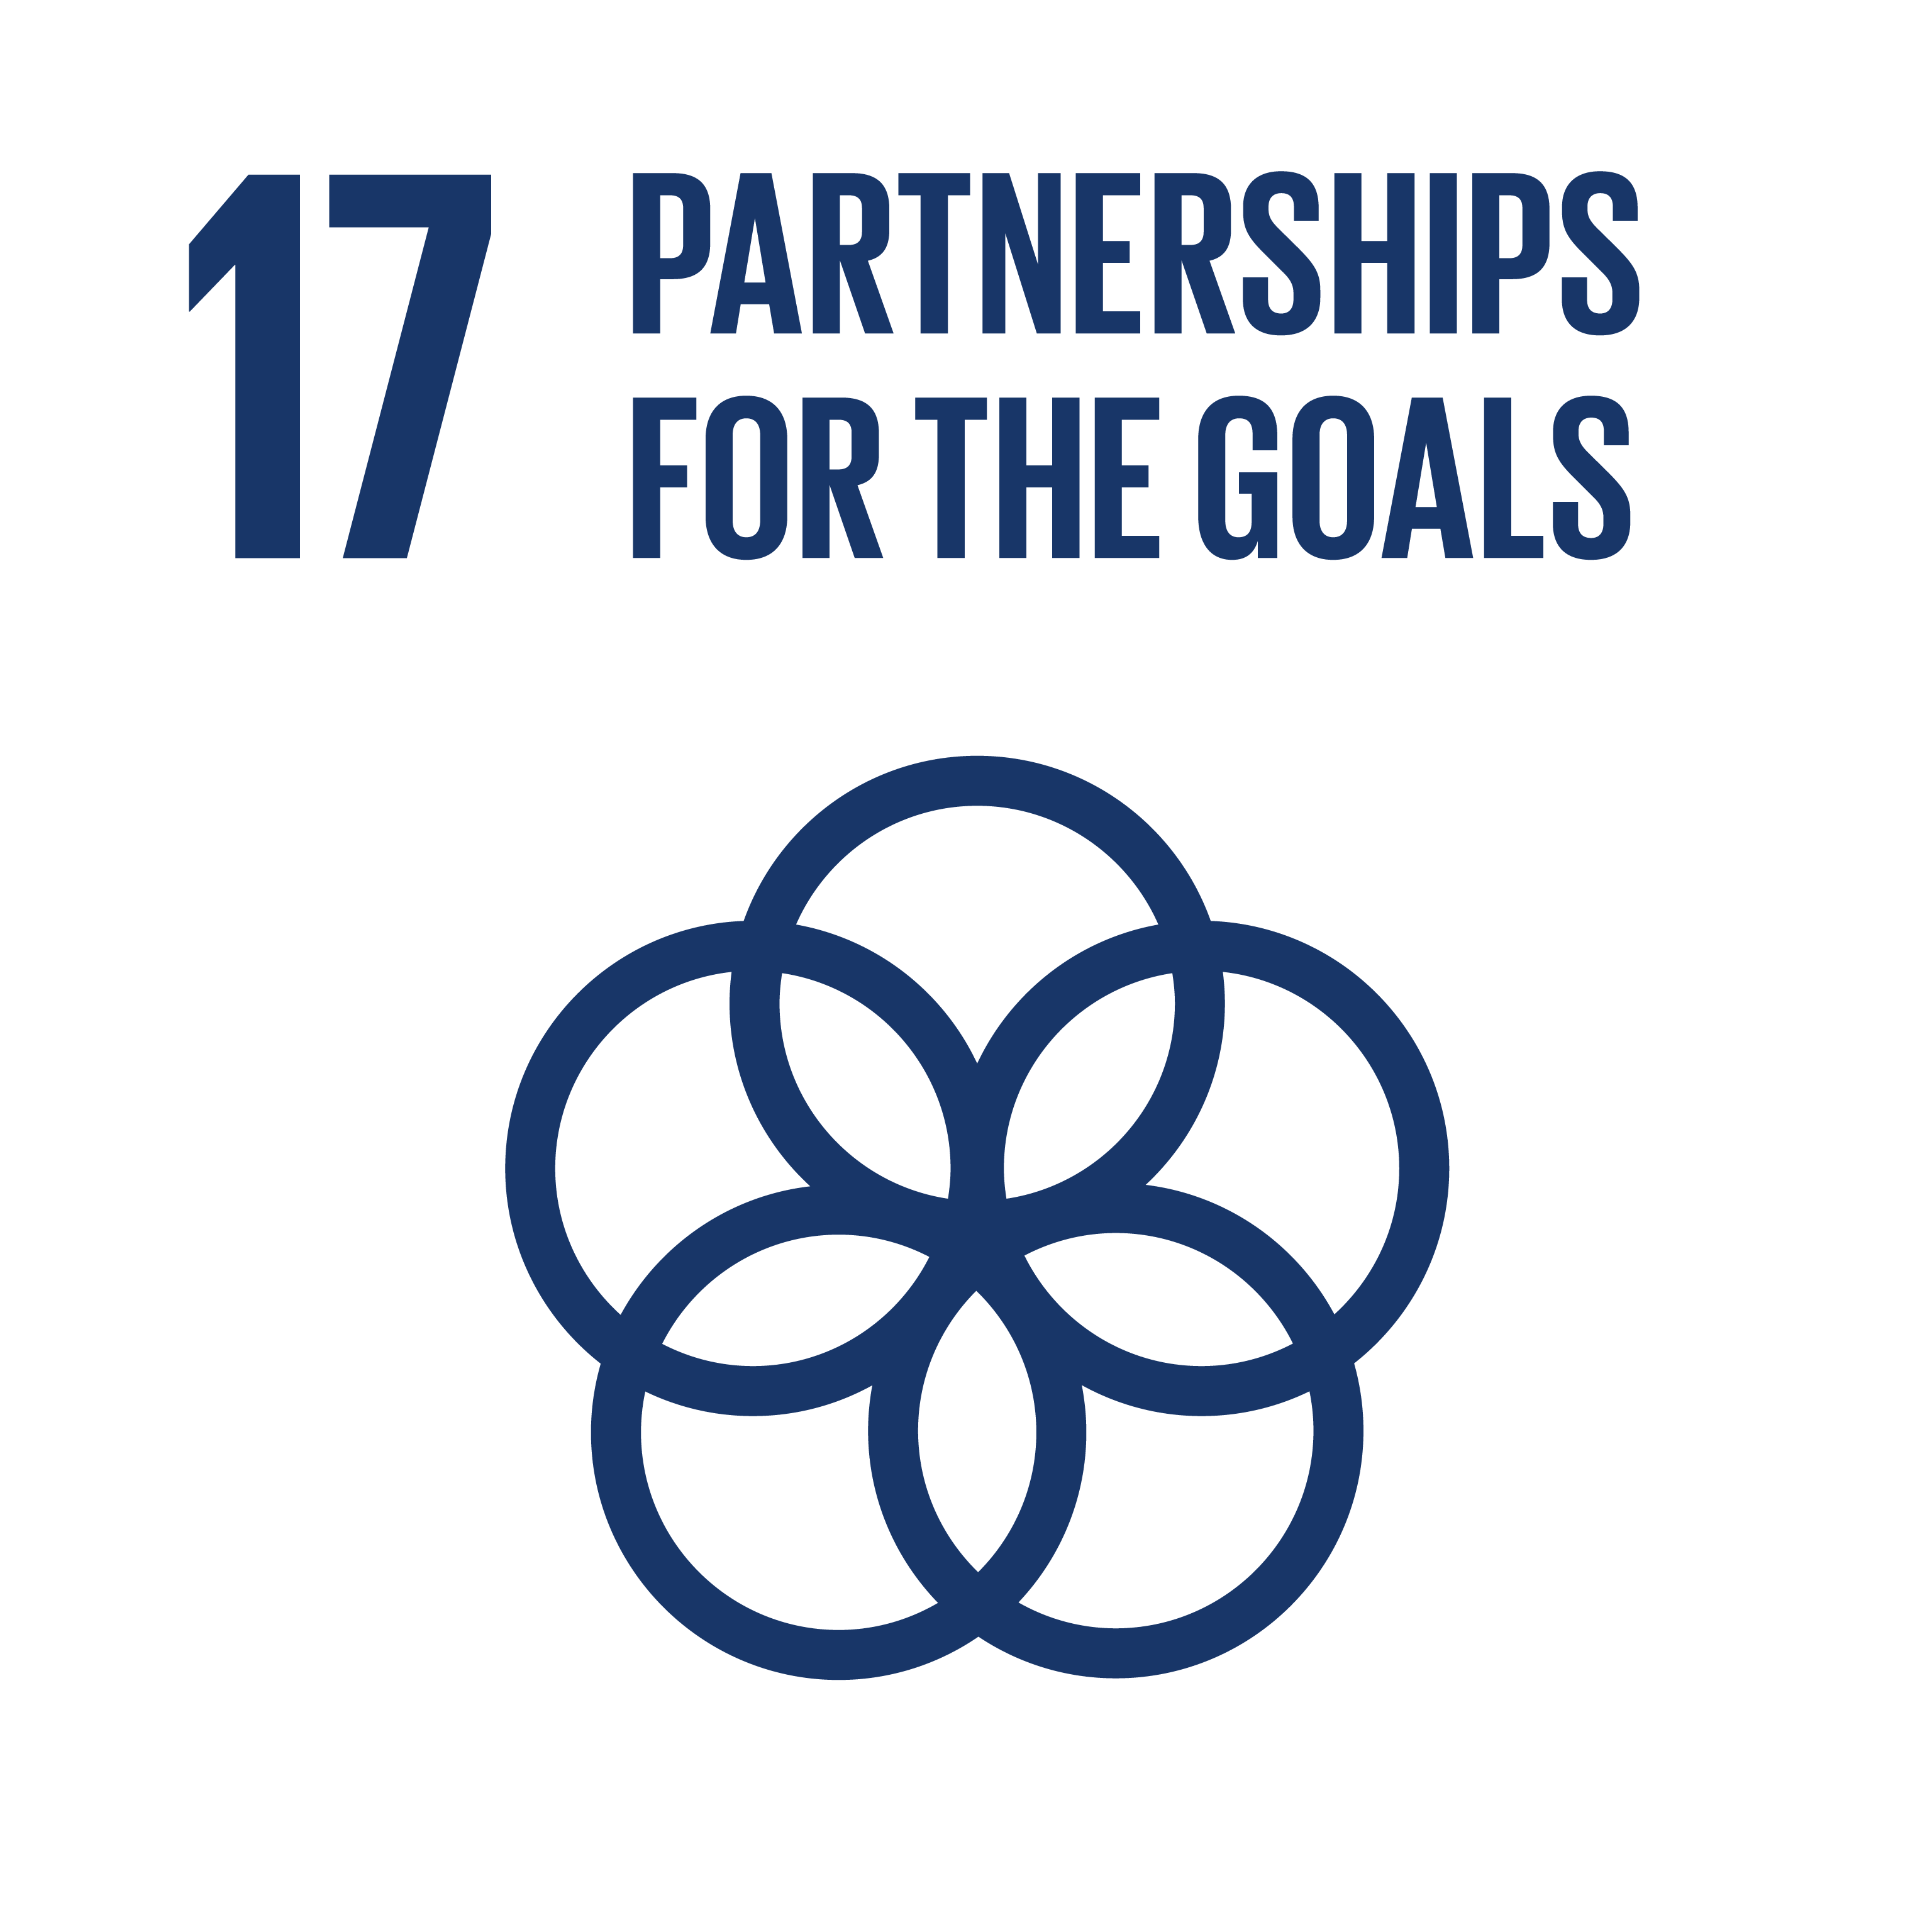 SDG17: Partnerships for the Goals